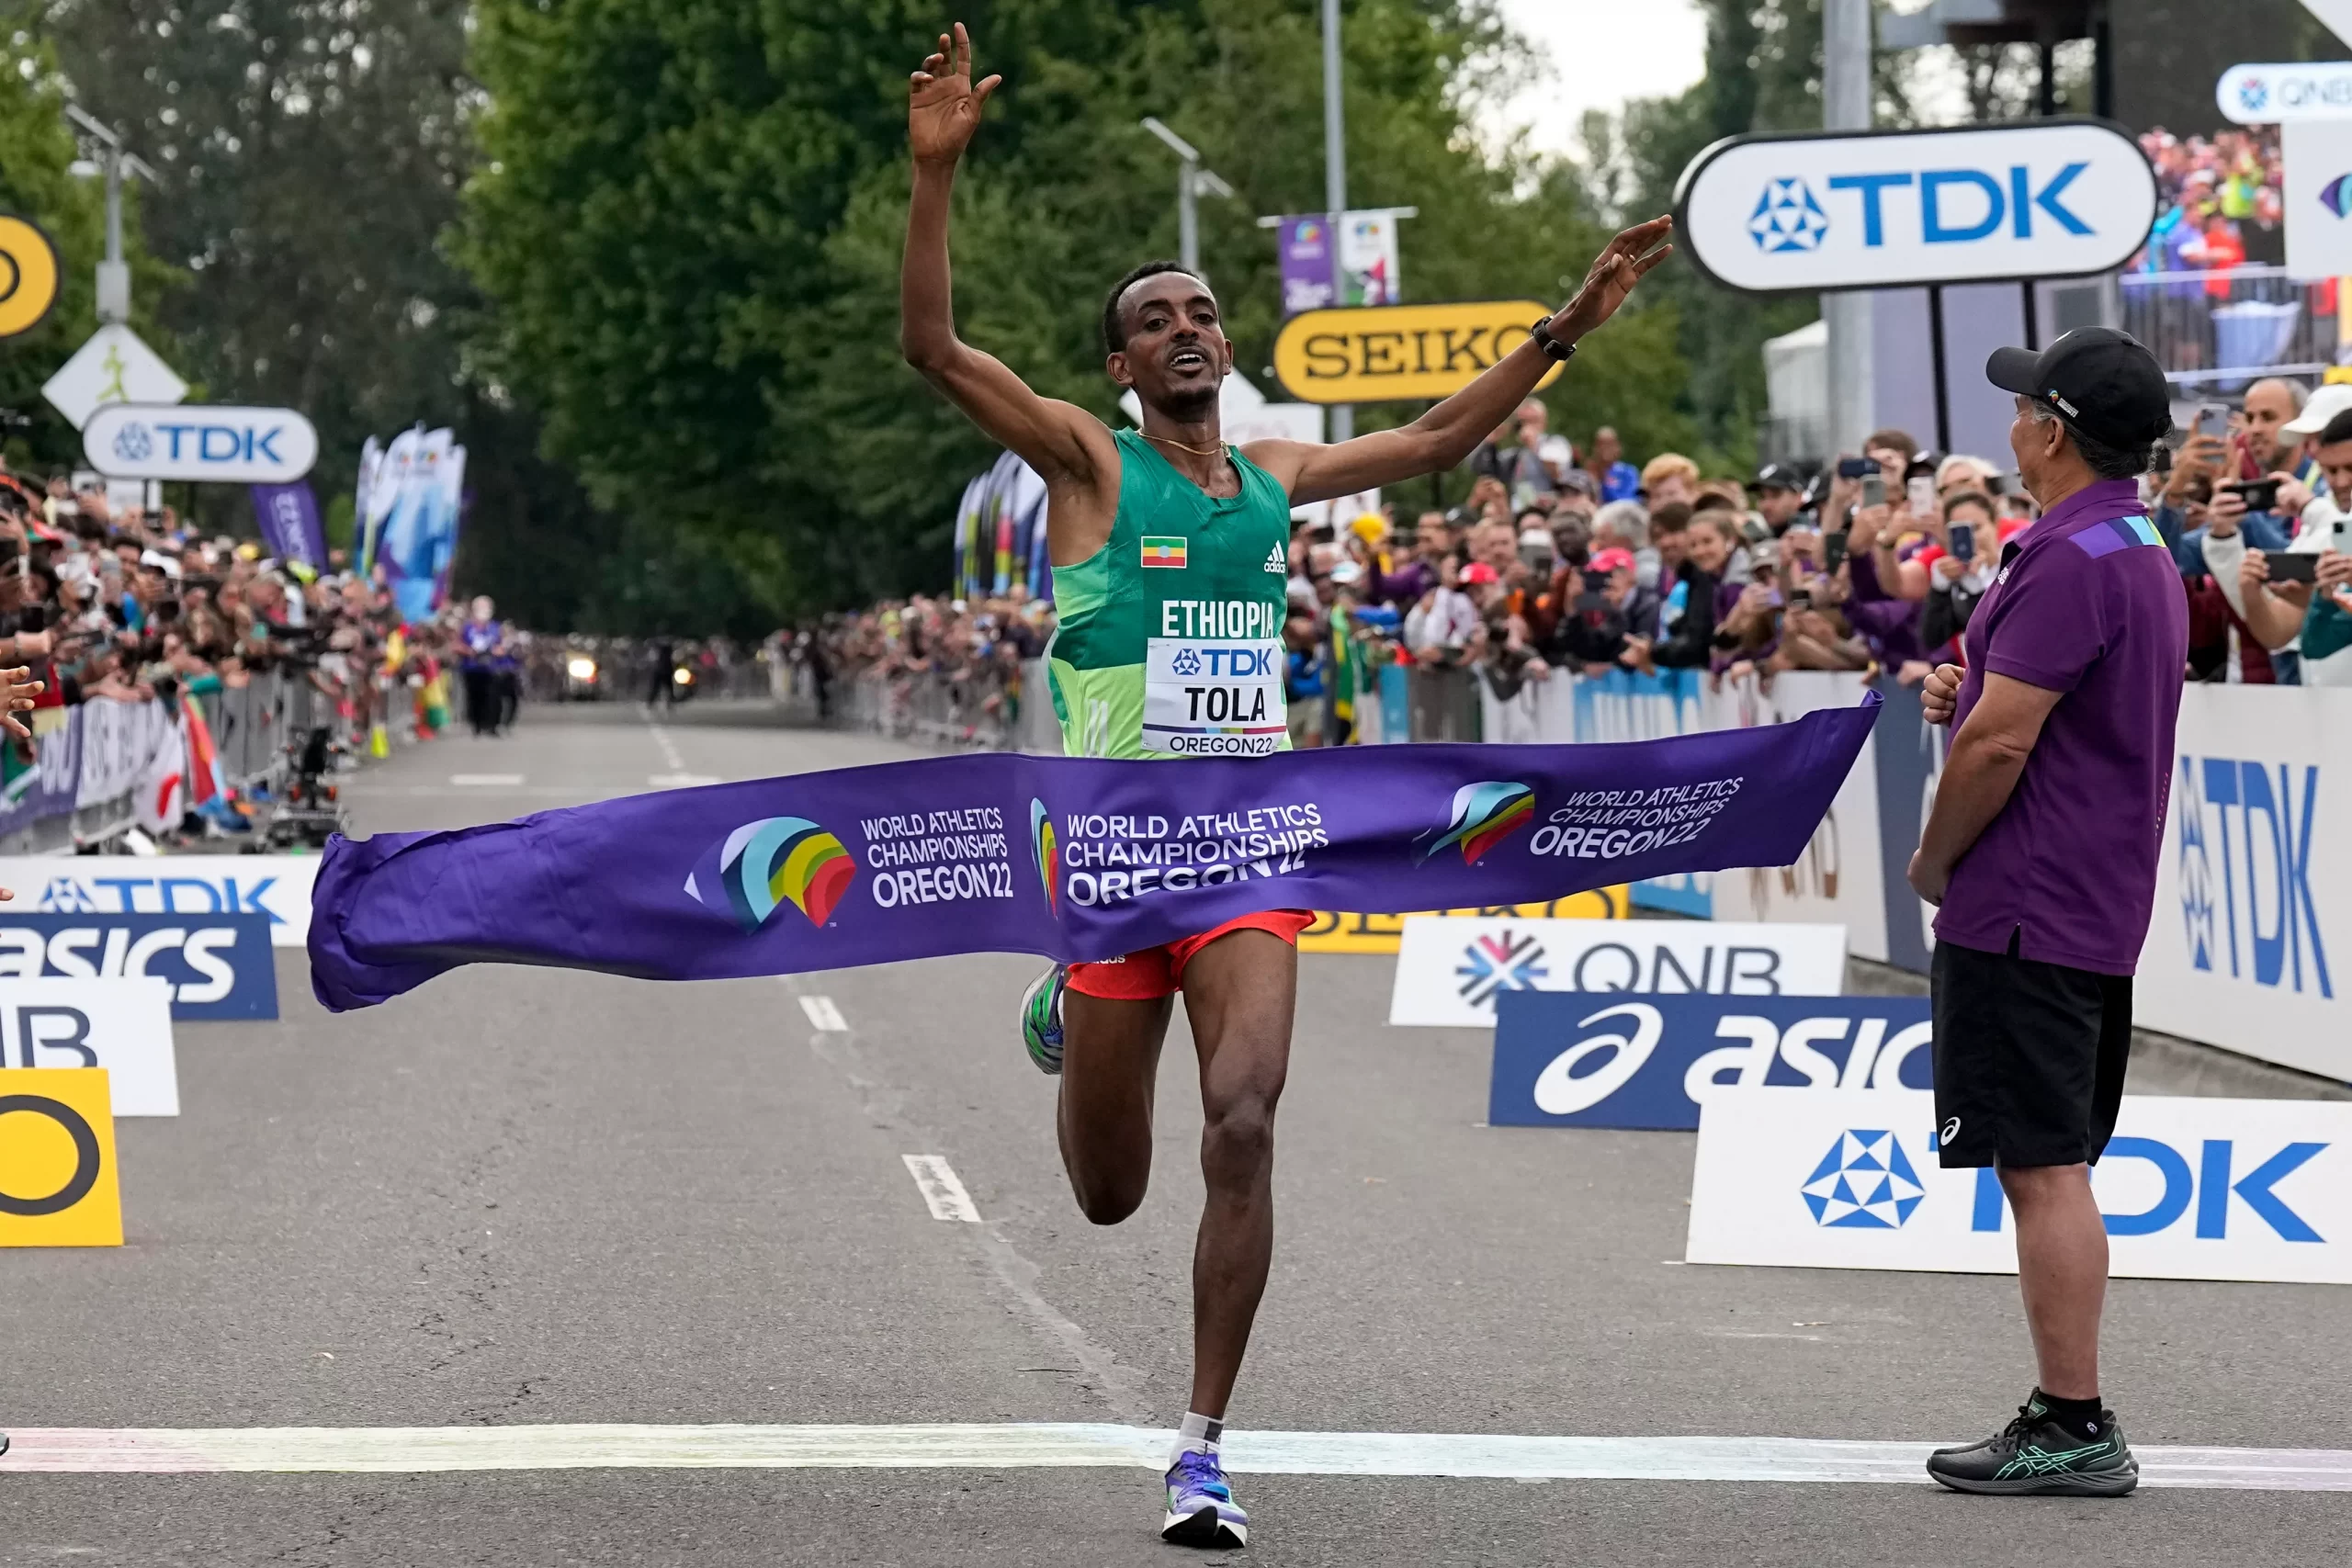 Ethiopia's Tola Takes Dominant Marathon Gold